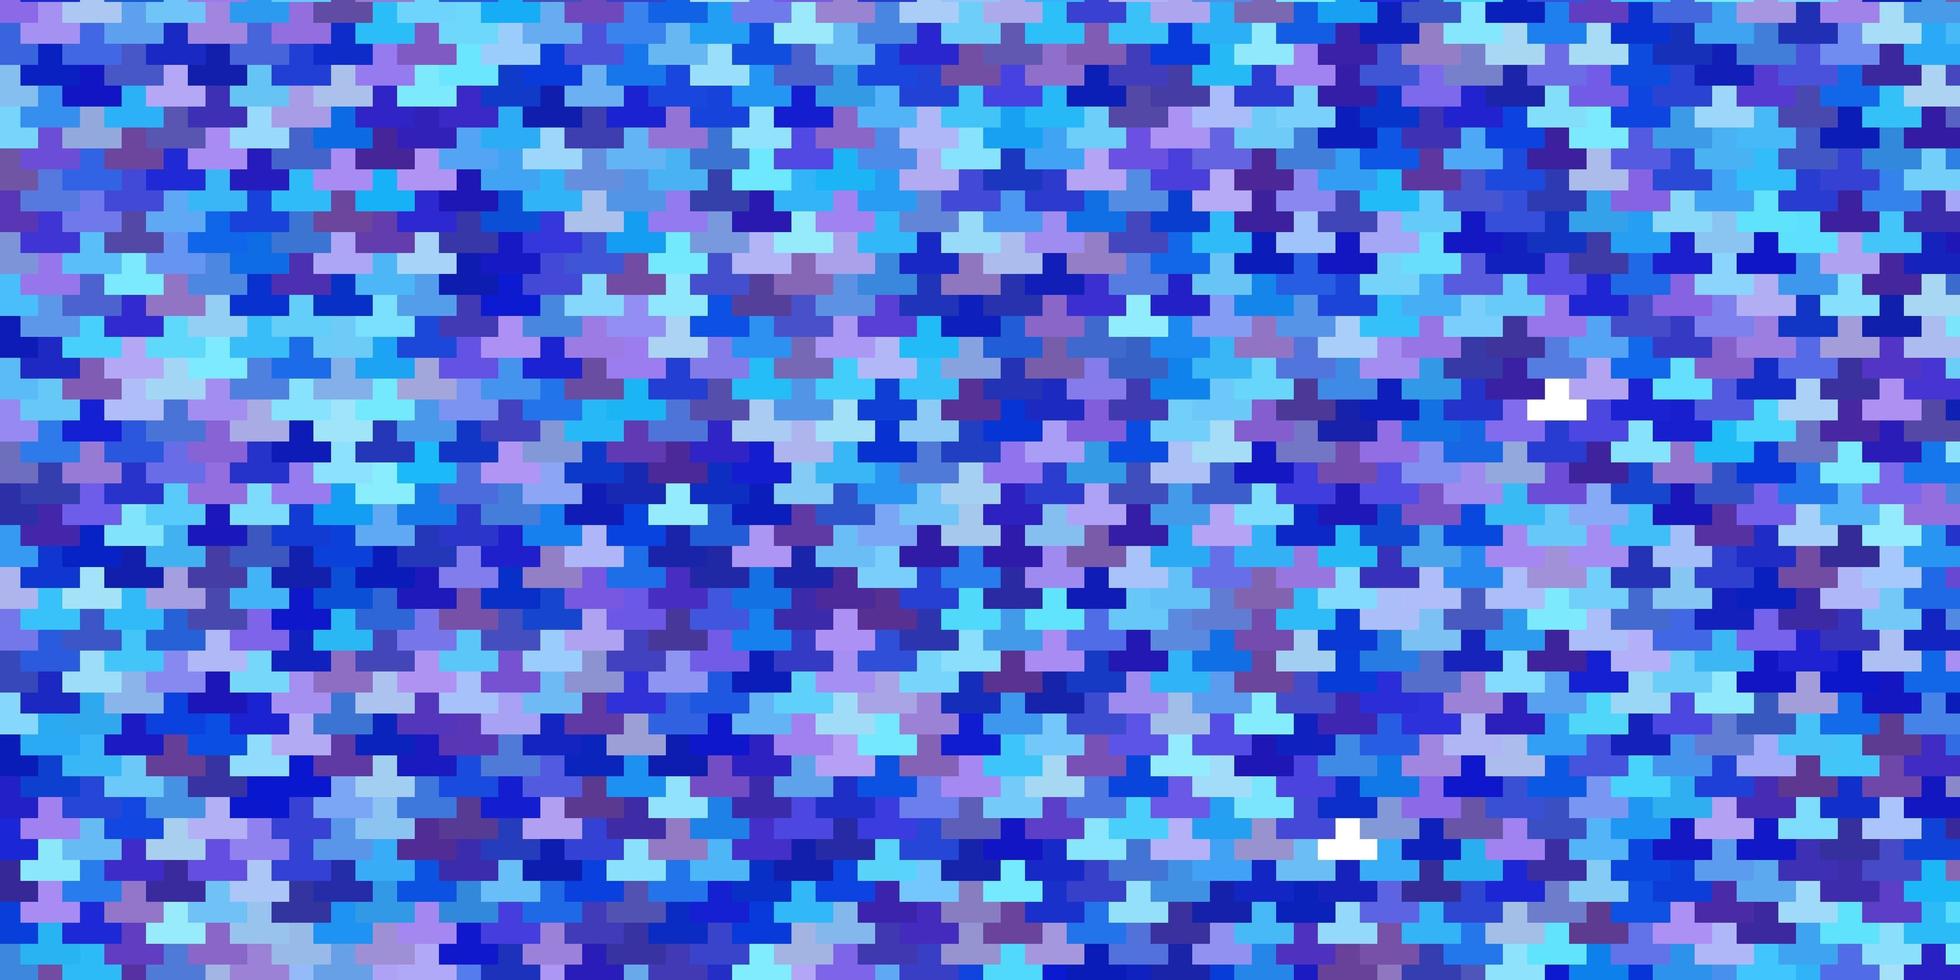 ljusrosa, blå vektormall med rektanglar. vektor